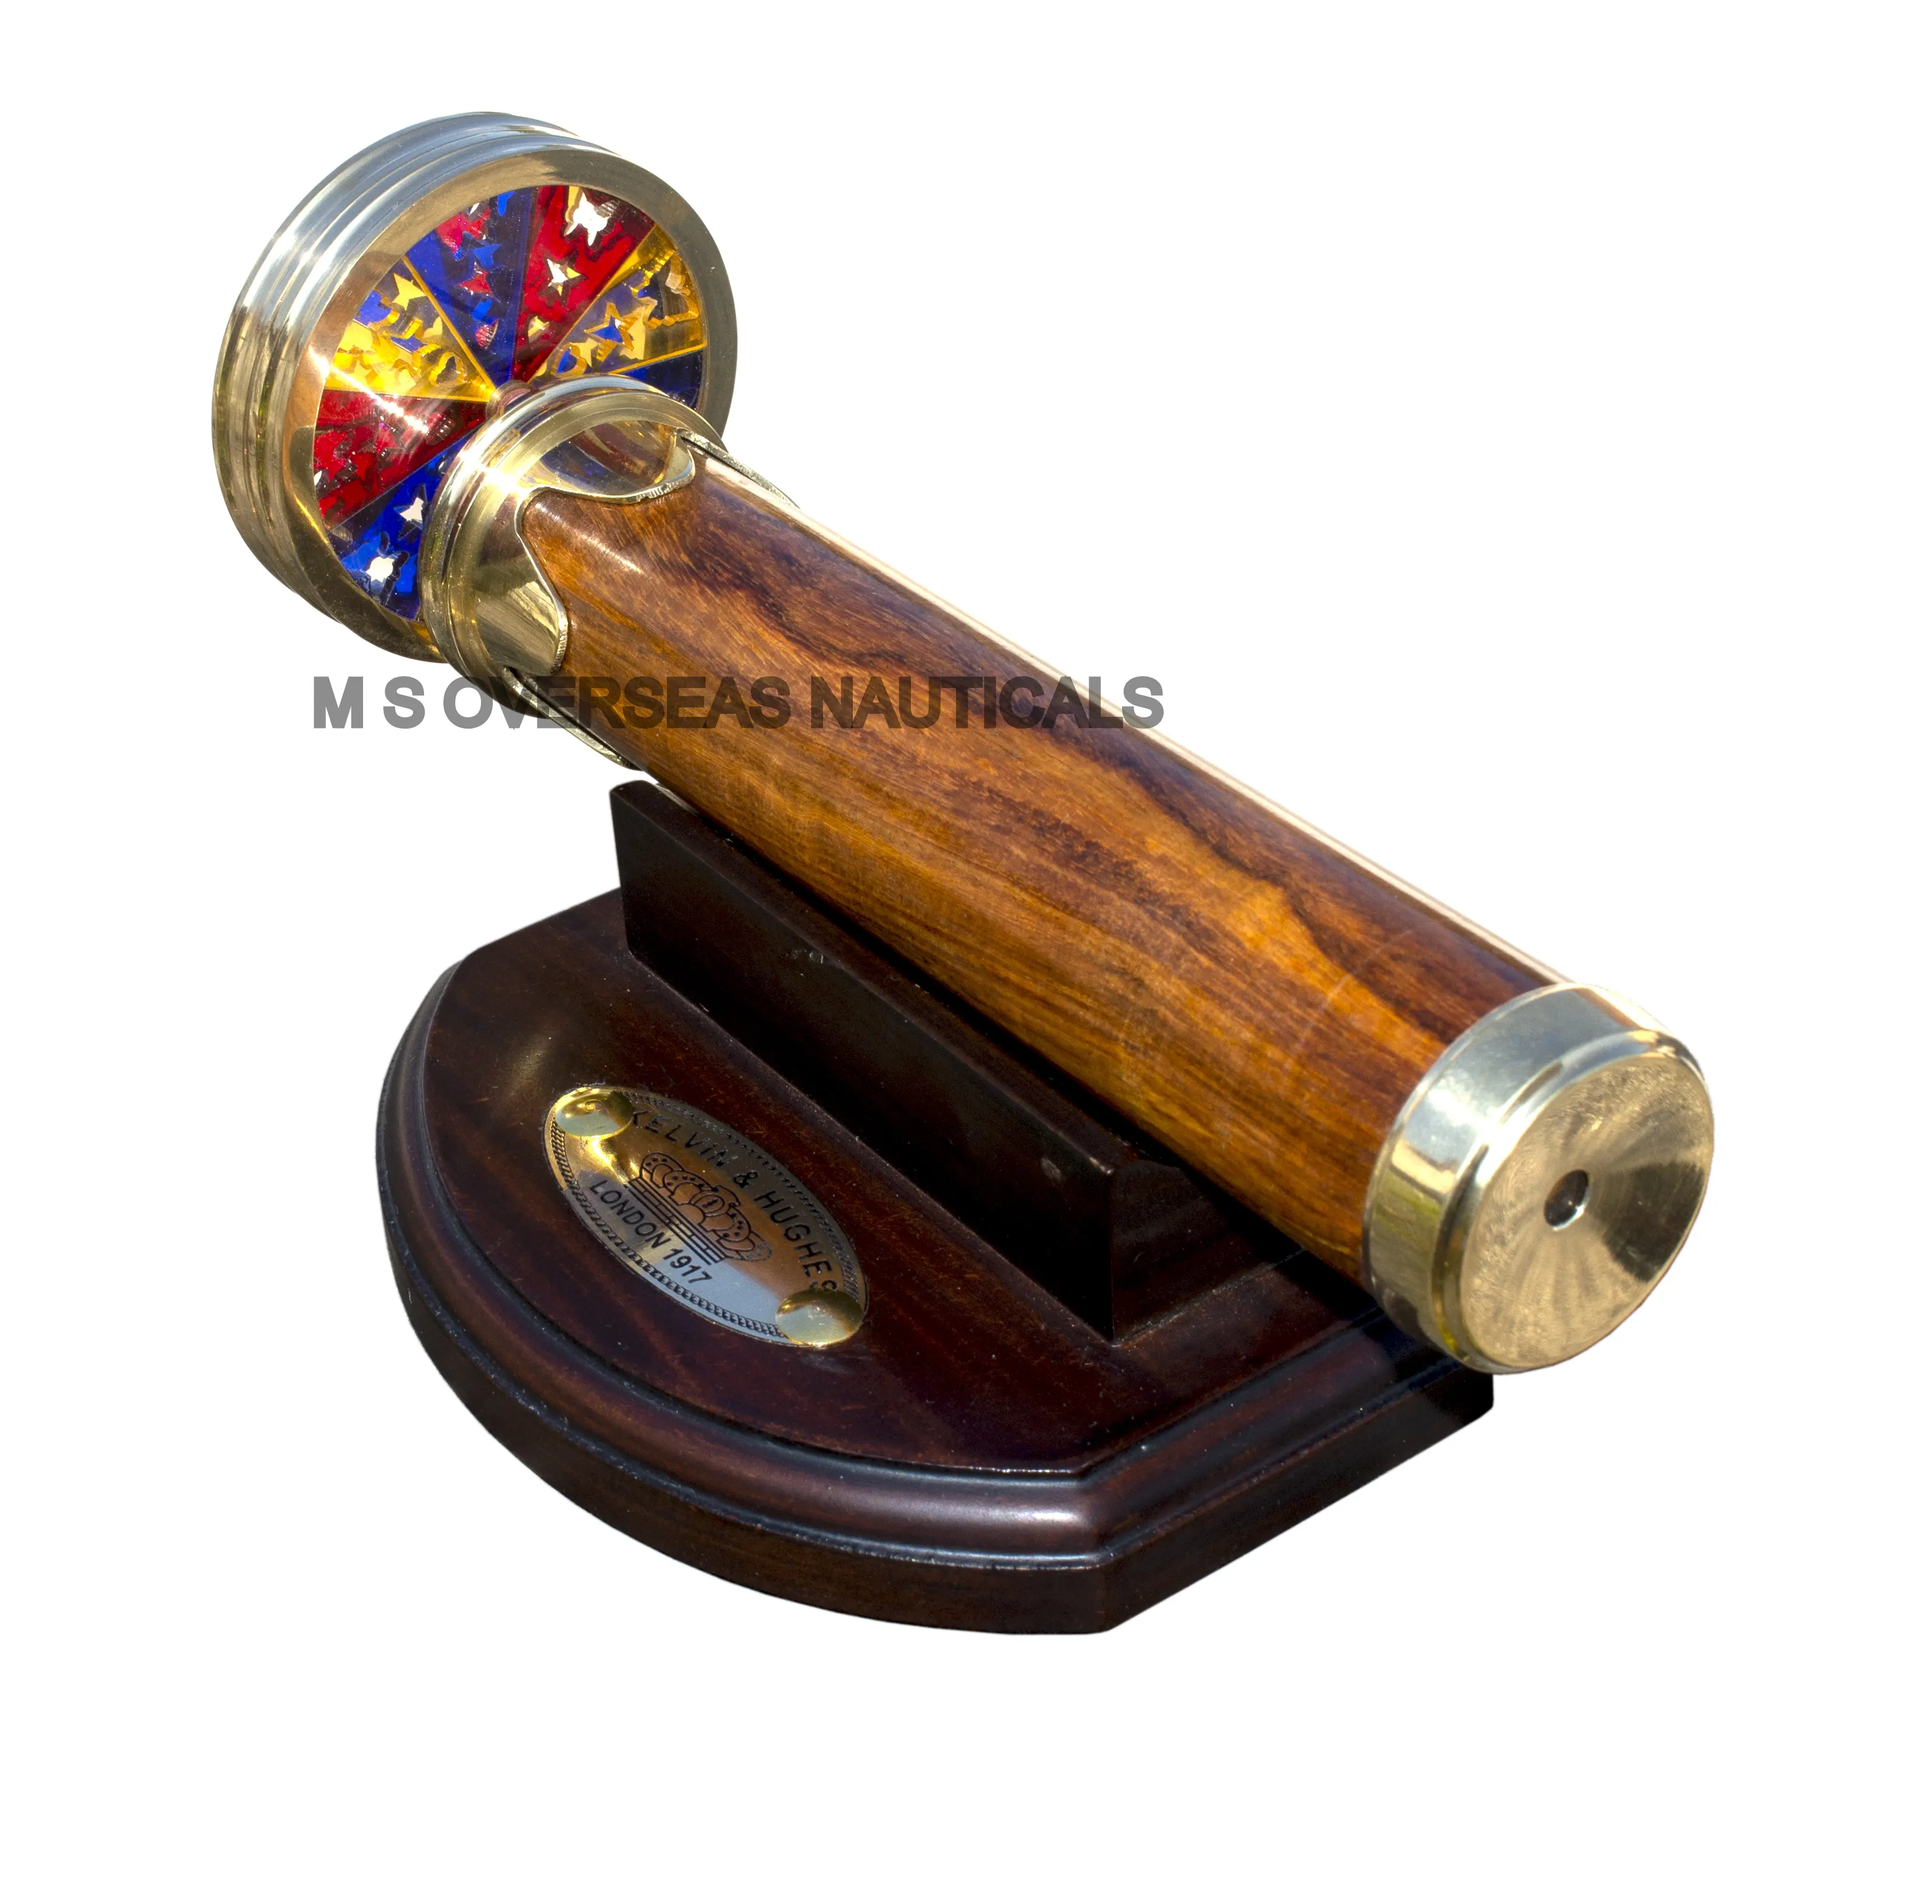 Caleidoscopio marittimo in ottone e legno fantascienza educativa portachiavi in ottone caleidoscopio giocattolo per bambini regalo per adulti anziani